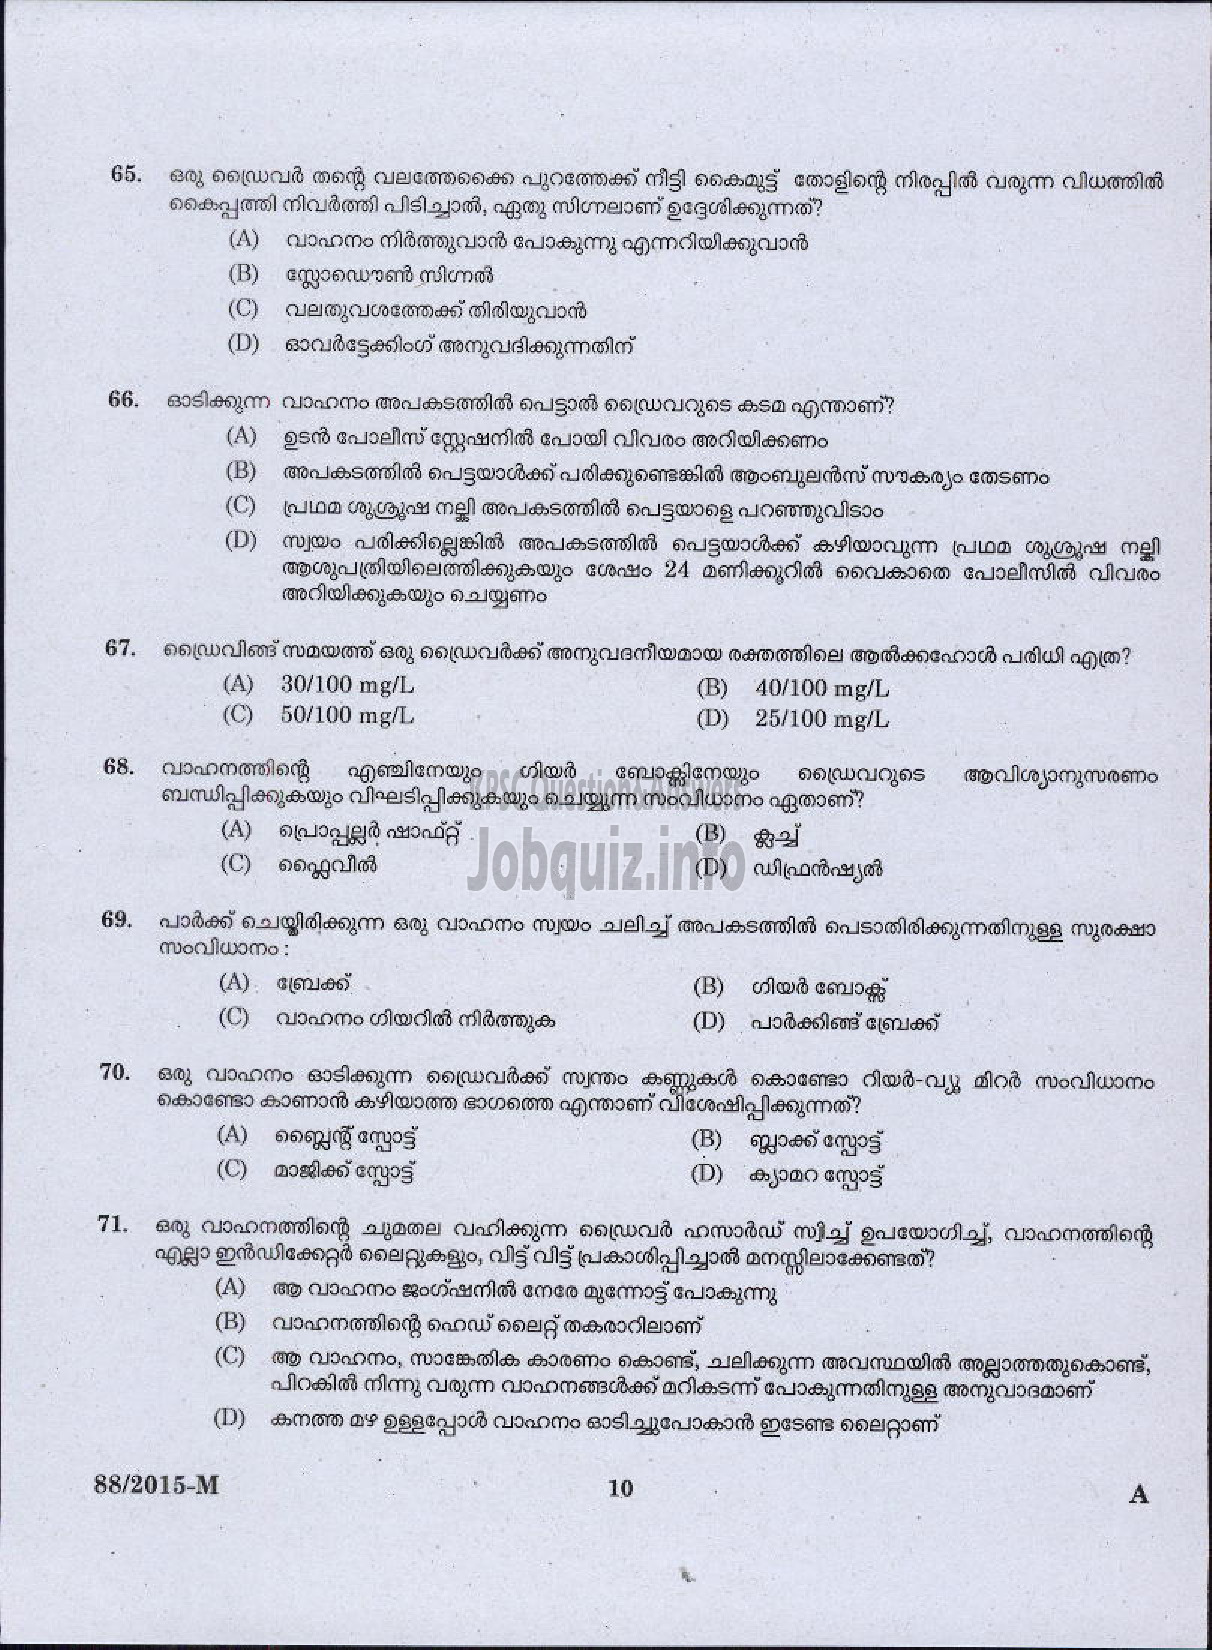 Kerala PSC Question Paper - DRIVER GRADE II LDV VARIOUS / DRIVER GR II / DRIVER LDV VARIOUS COMPANIES / CORPORATIONS-8